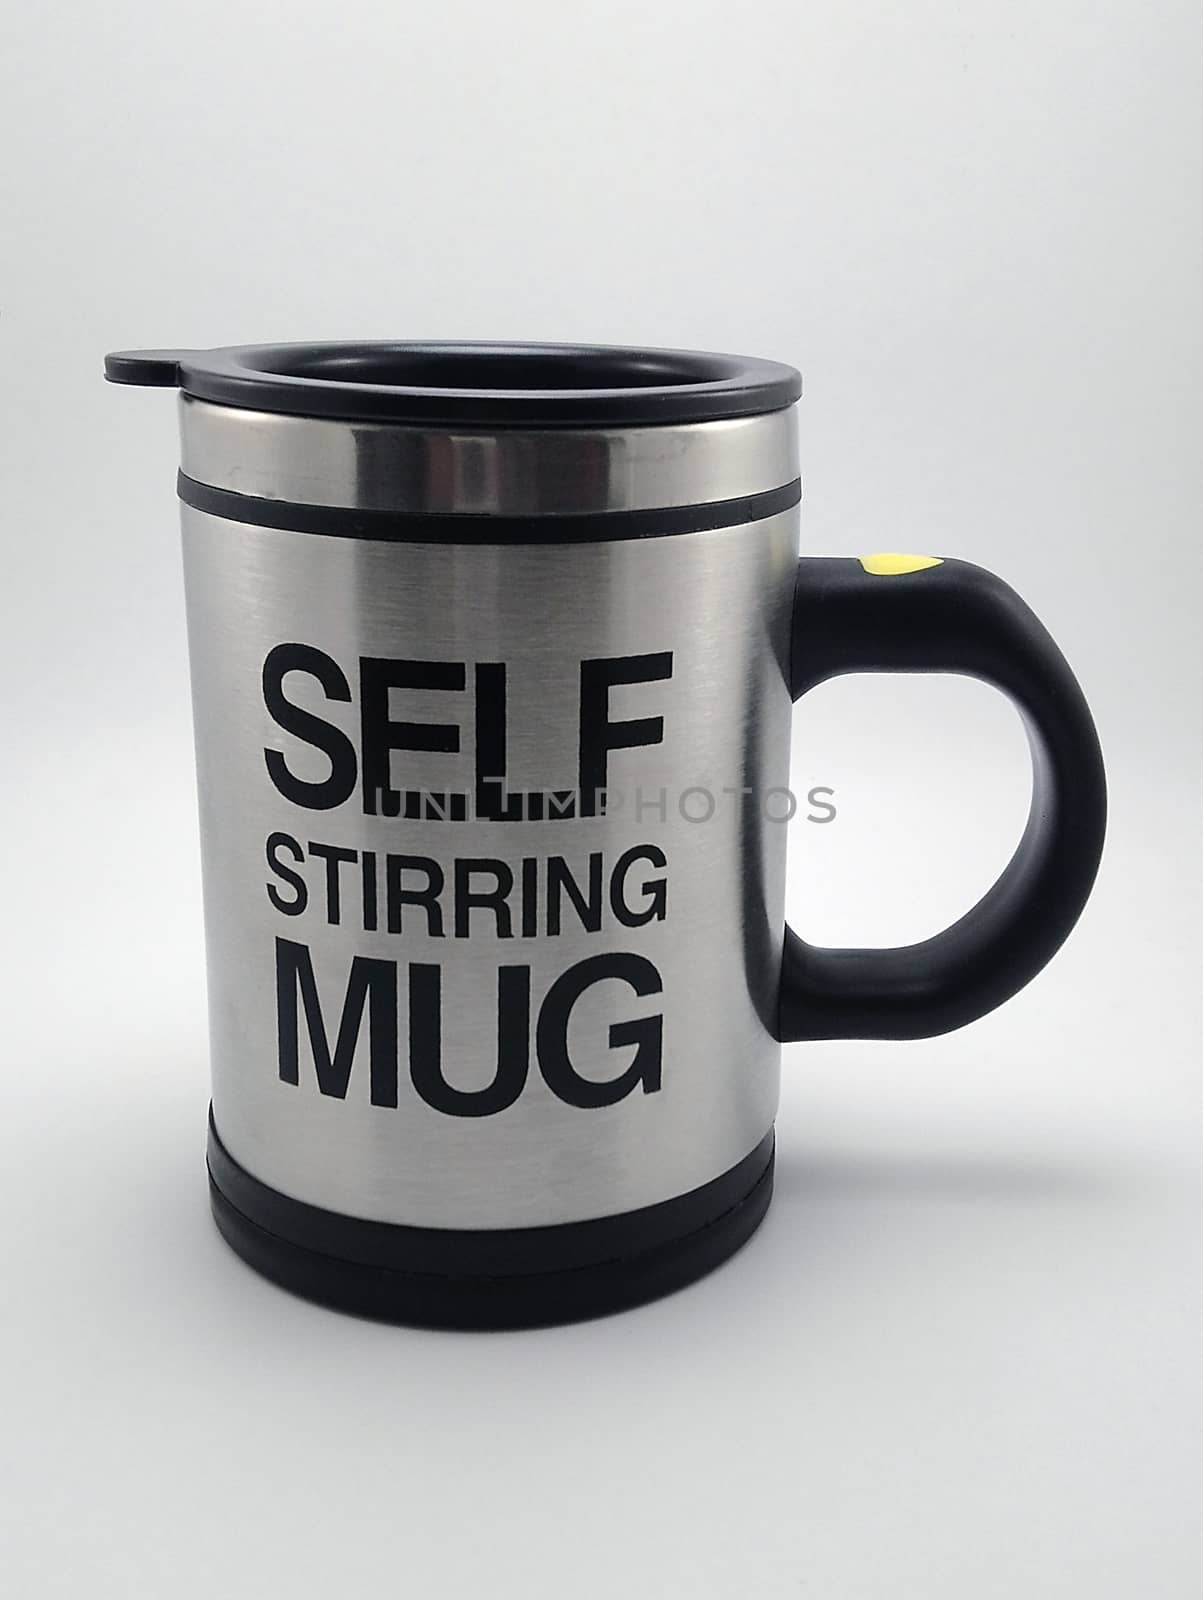 Self stirring mug in Manila, Philippines by imwaltersy